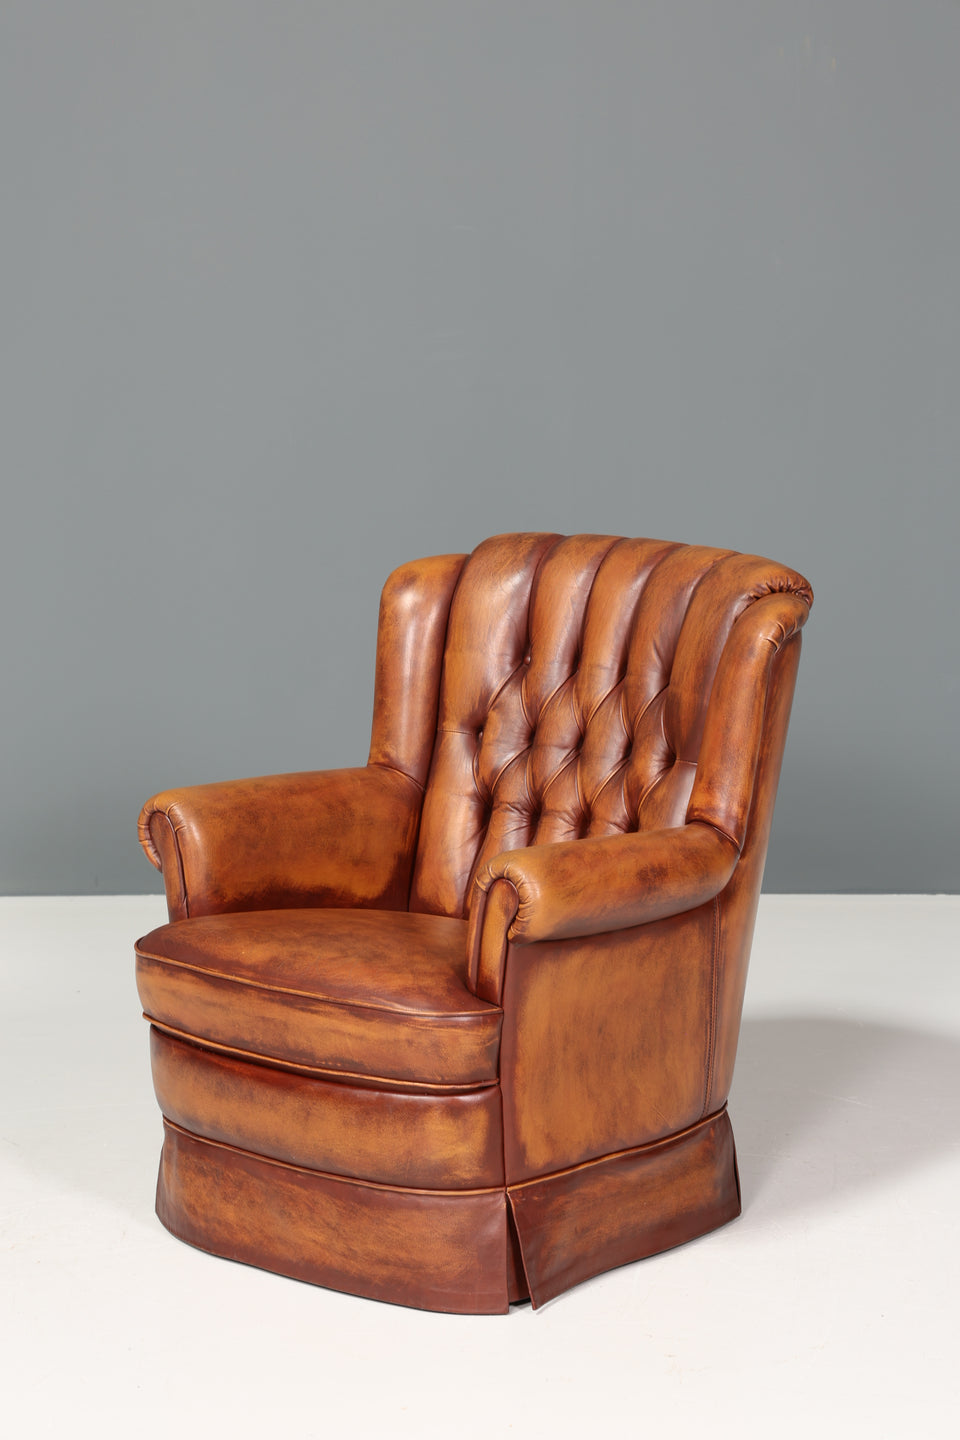 Wunderschöner Original Chesterfield echt Leder Sessel Englisch Herrensessel braun 2 von 2